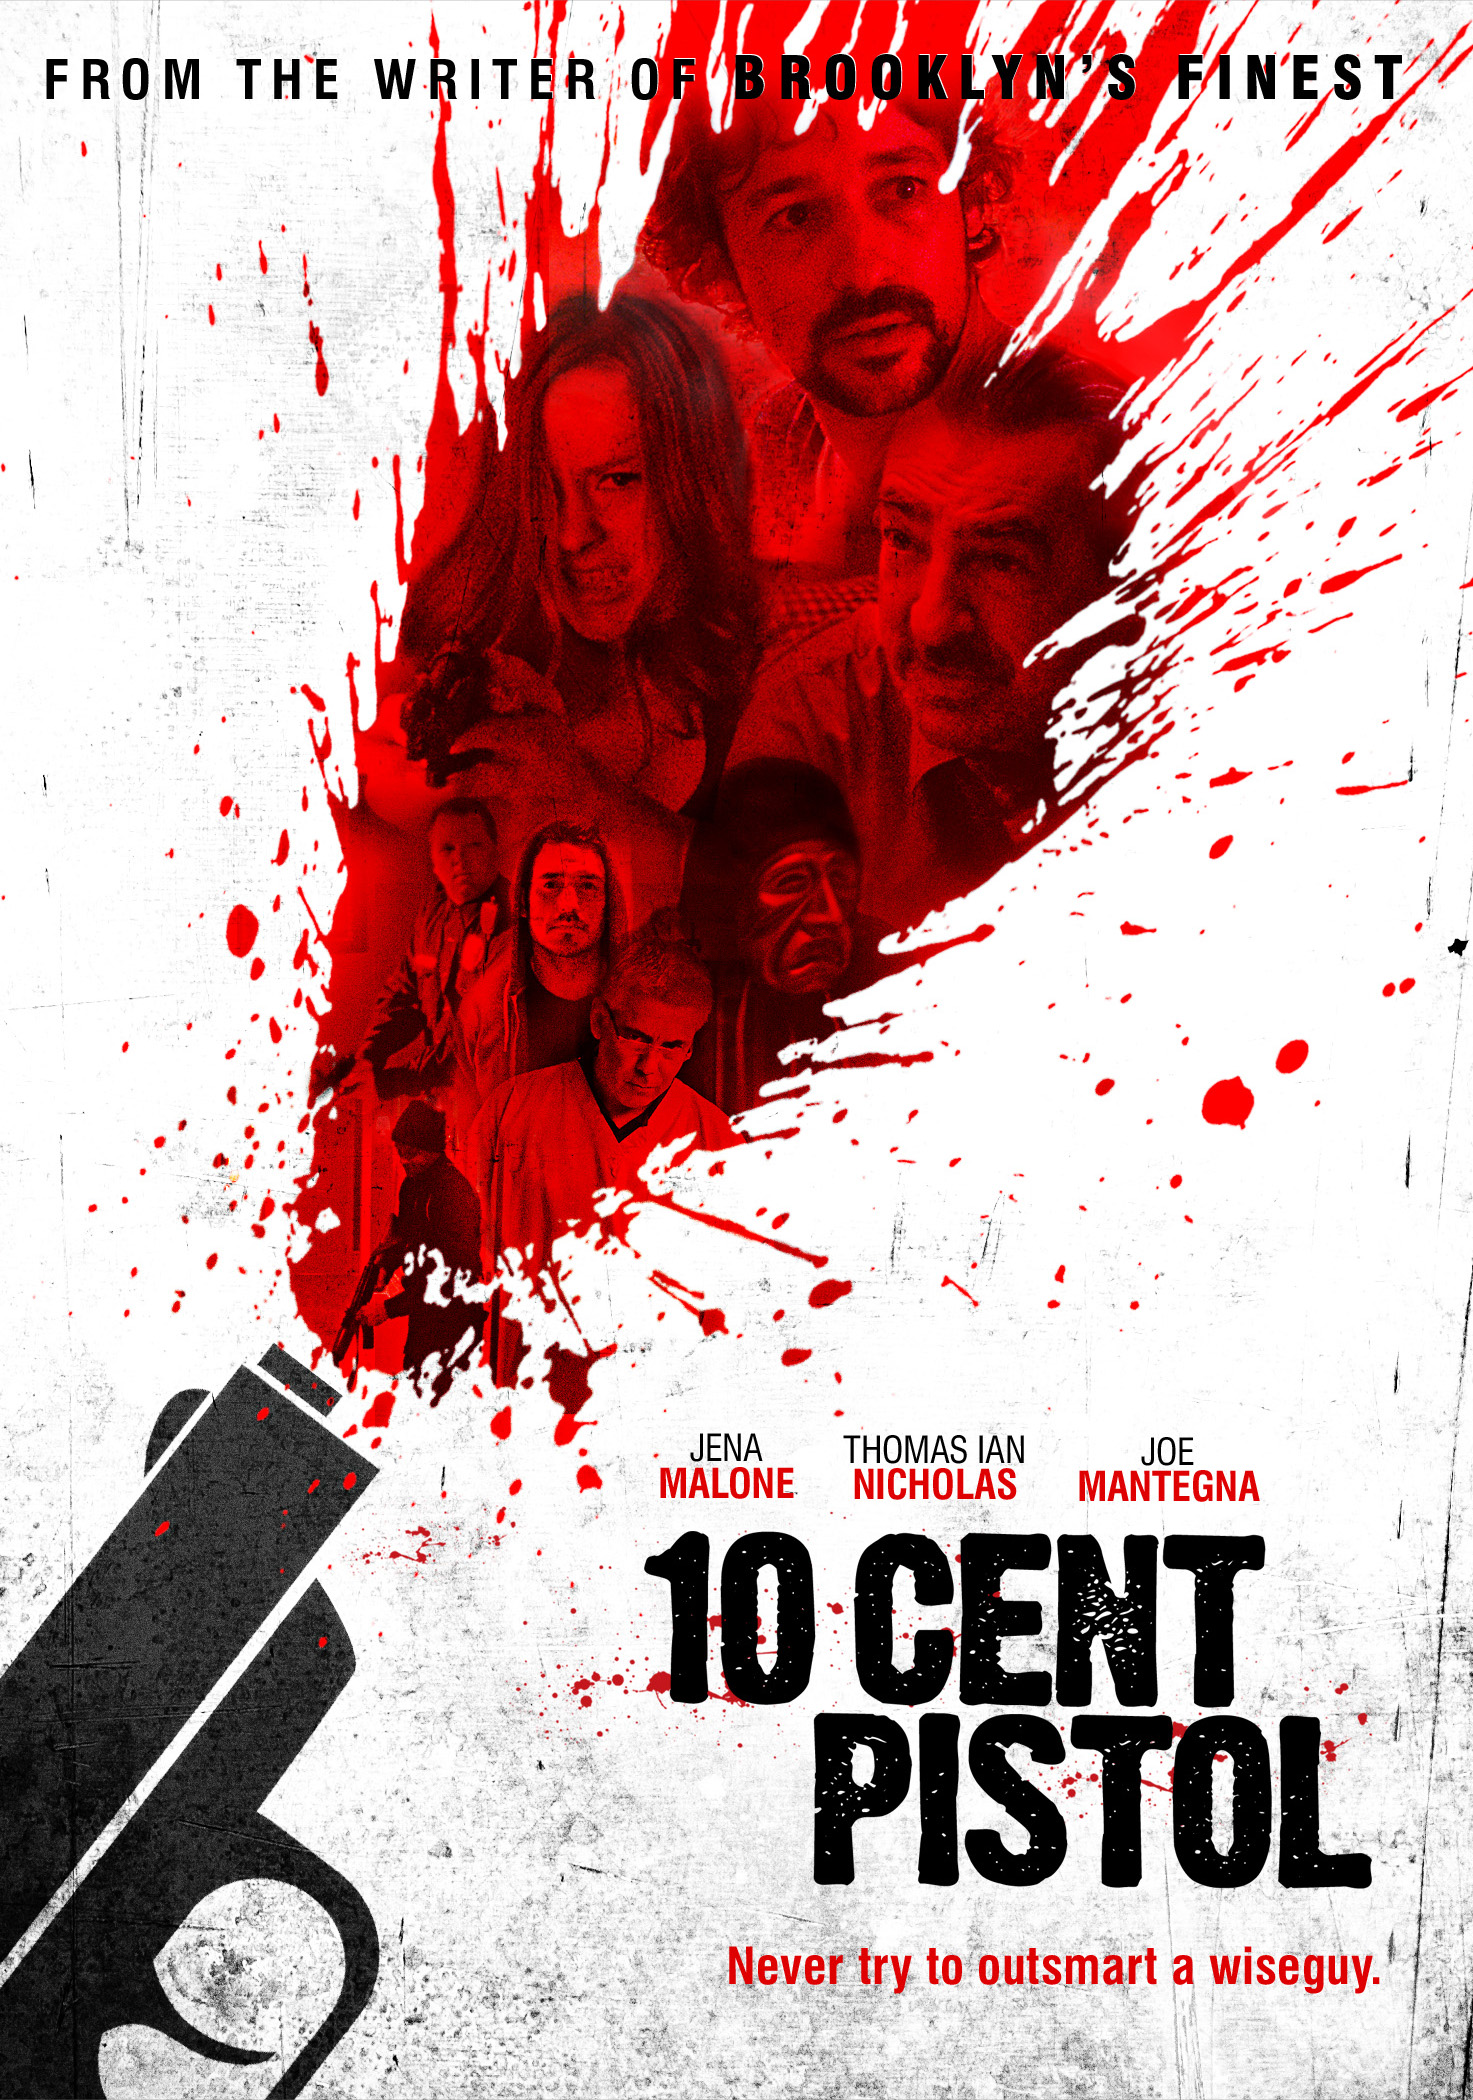 10 Cent Pistol (2014) Screenshot 1 